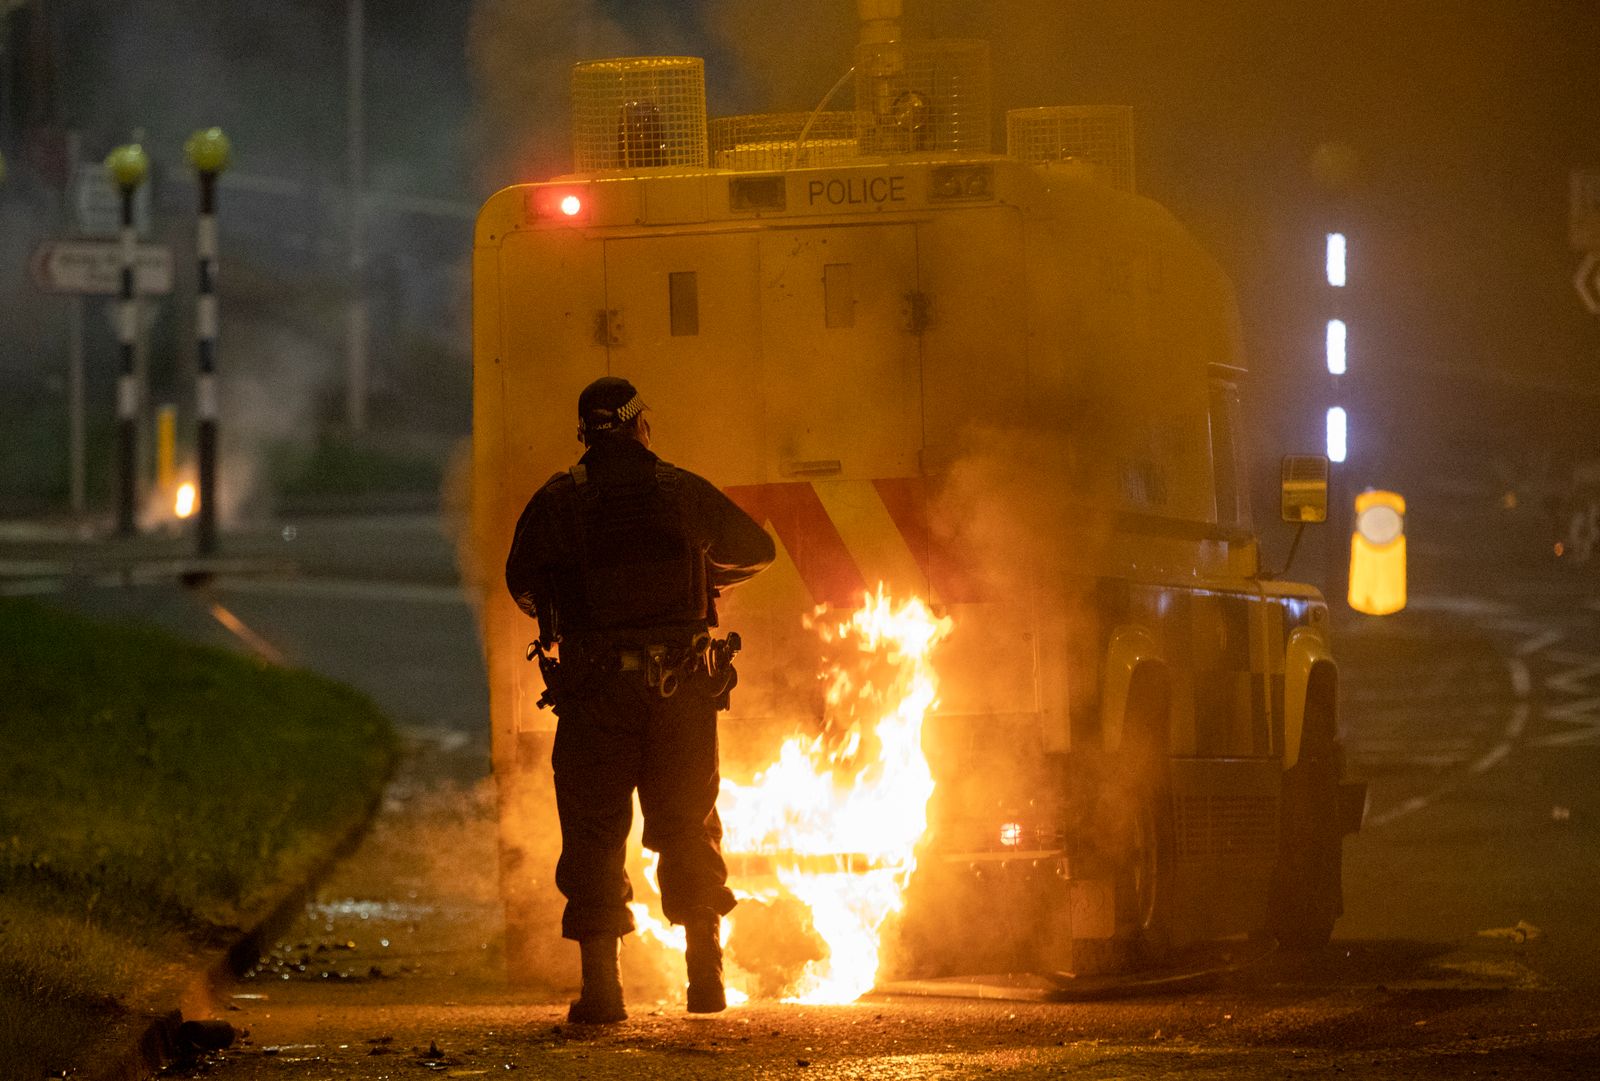 ضابط يسير خلف سيارة للشرطة تتصاعد فيها ألسنة اللهب وذلك على خلفية اندلاع أعمال عنف في منطقة نيوتاونبي، شمال بلفاست، في إيرلندا الشمالية - AFP